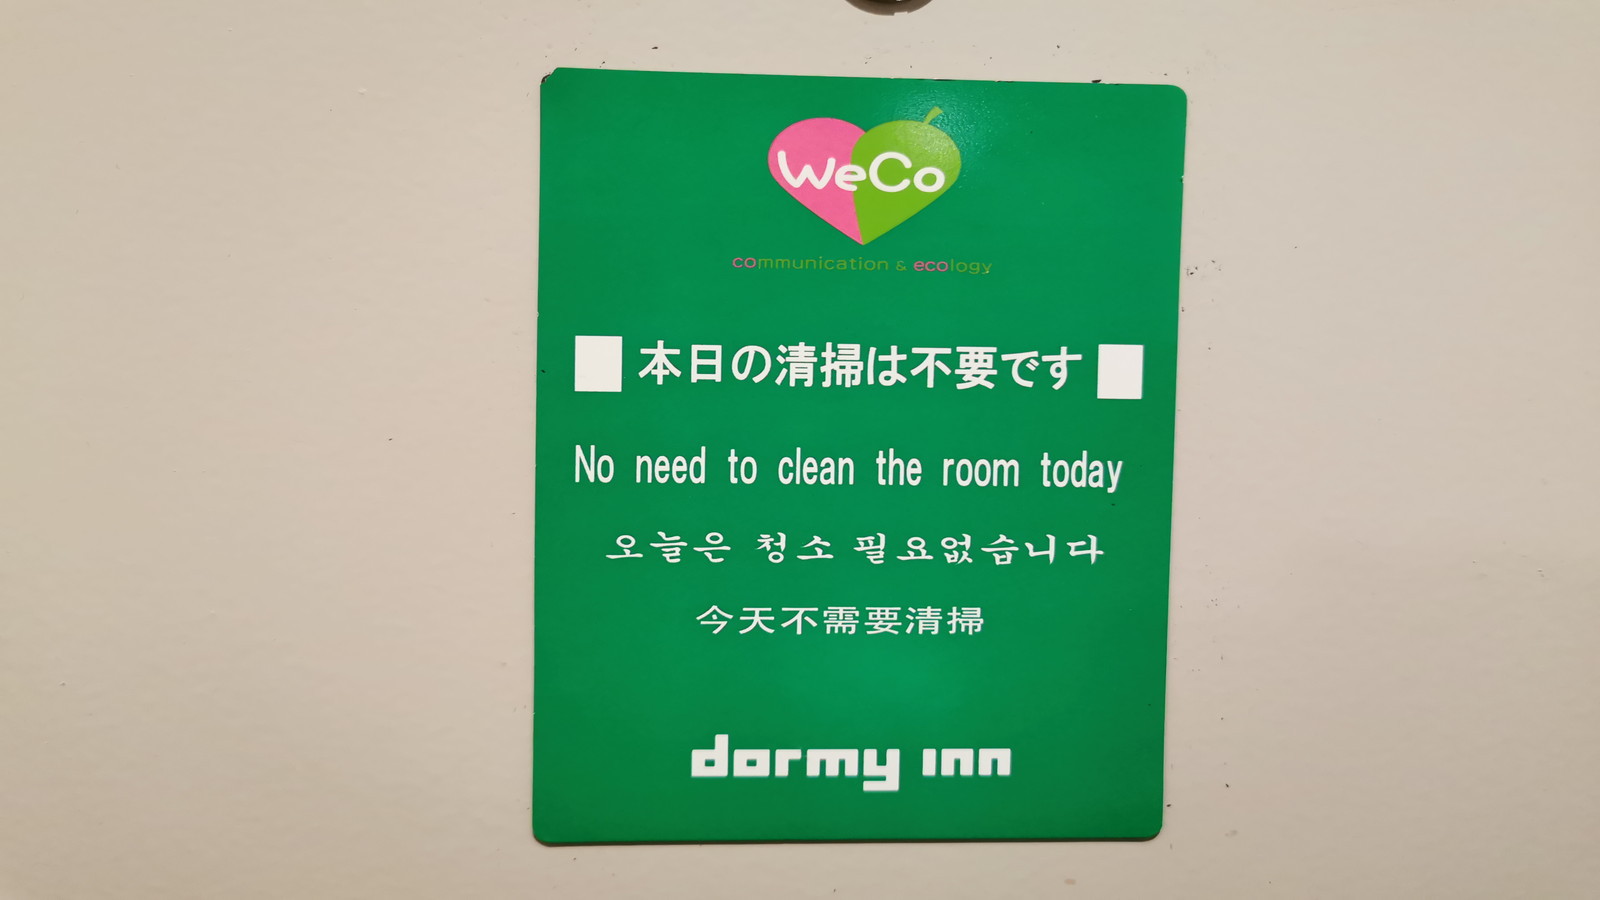 【客室】清掃不要のお客様はドアに掲示を